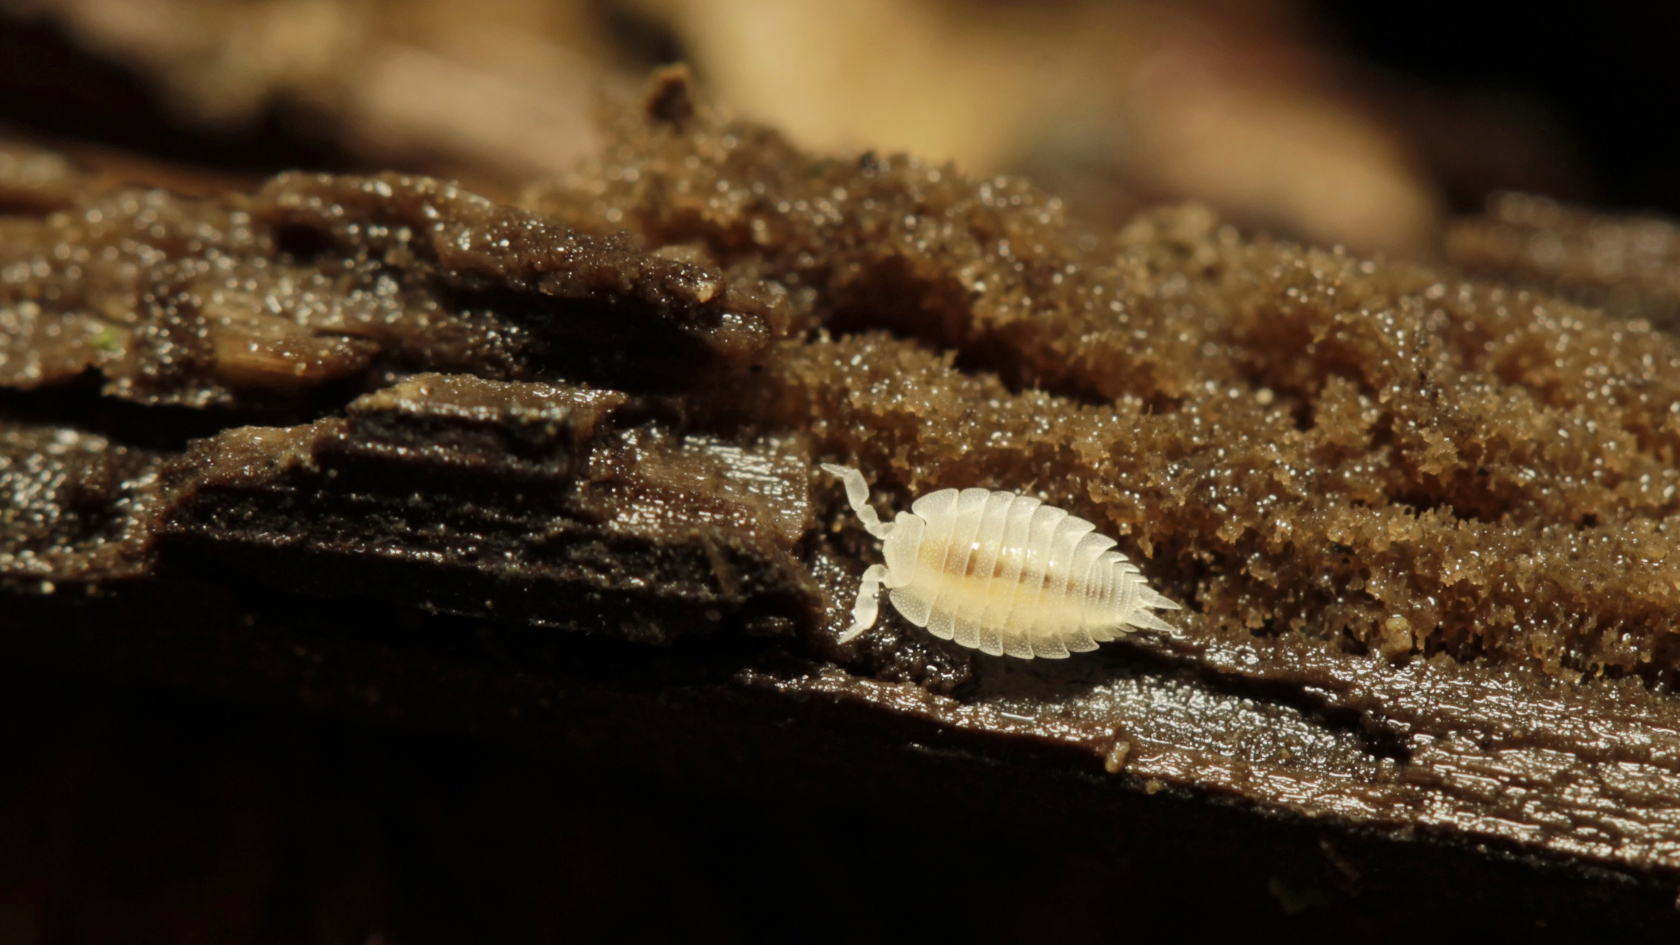 Ameisenassel sind selten außerhalb ihrer Wohngemeinschaften zu finden. Foto: Benedikt Kästle